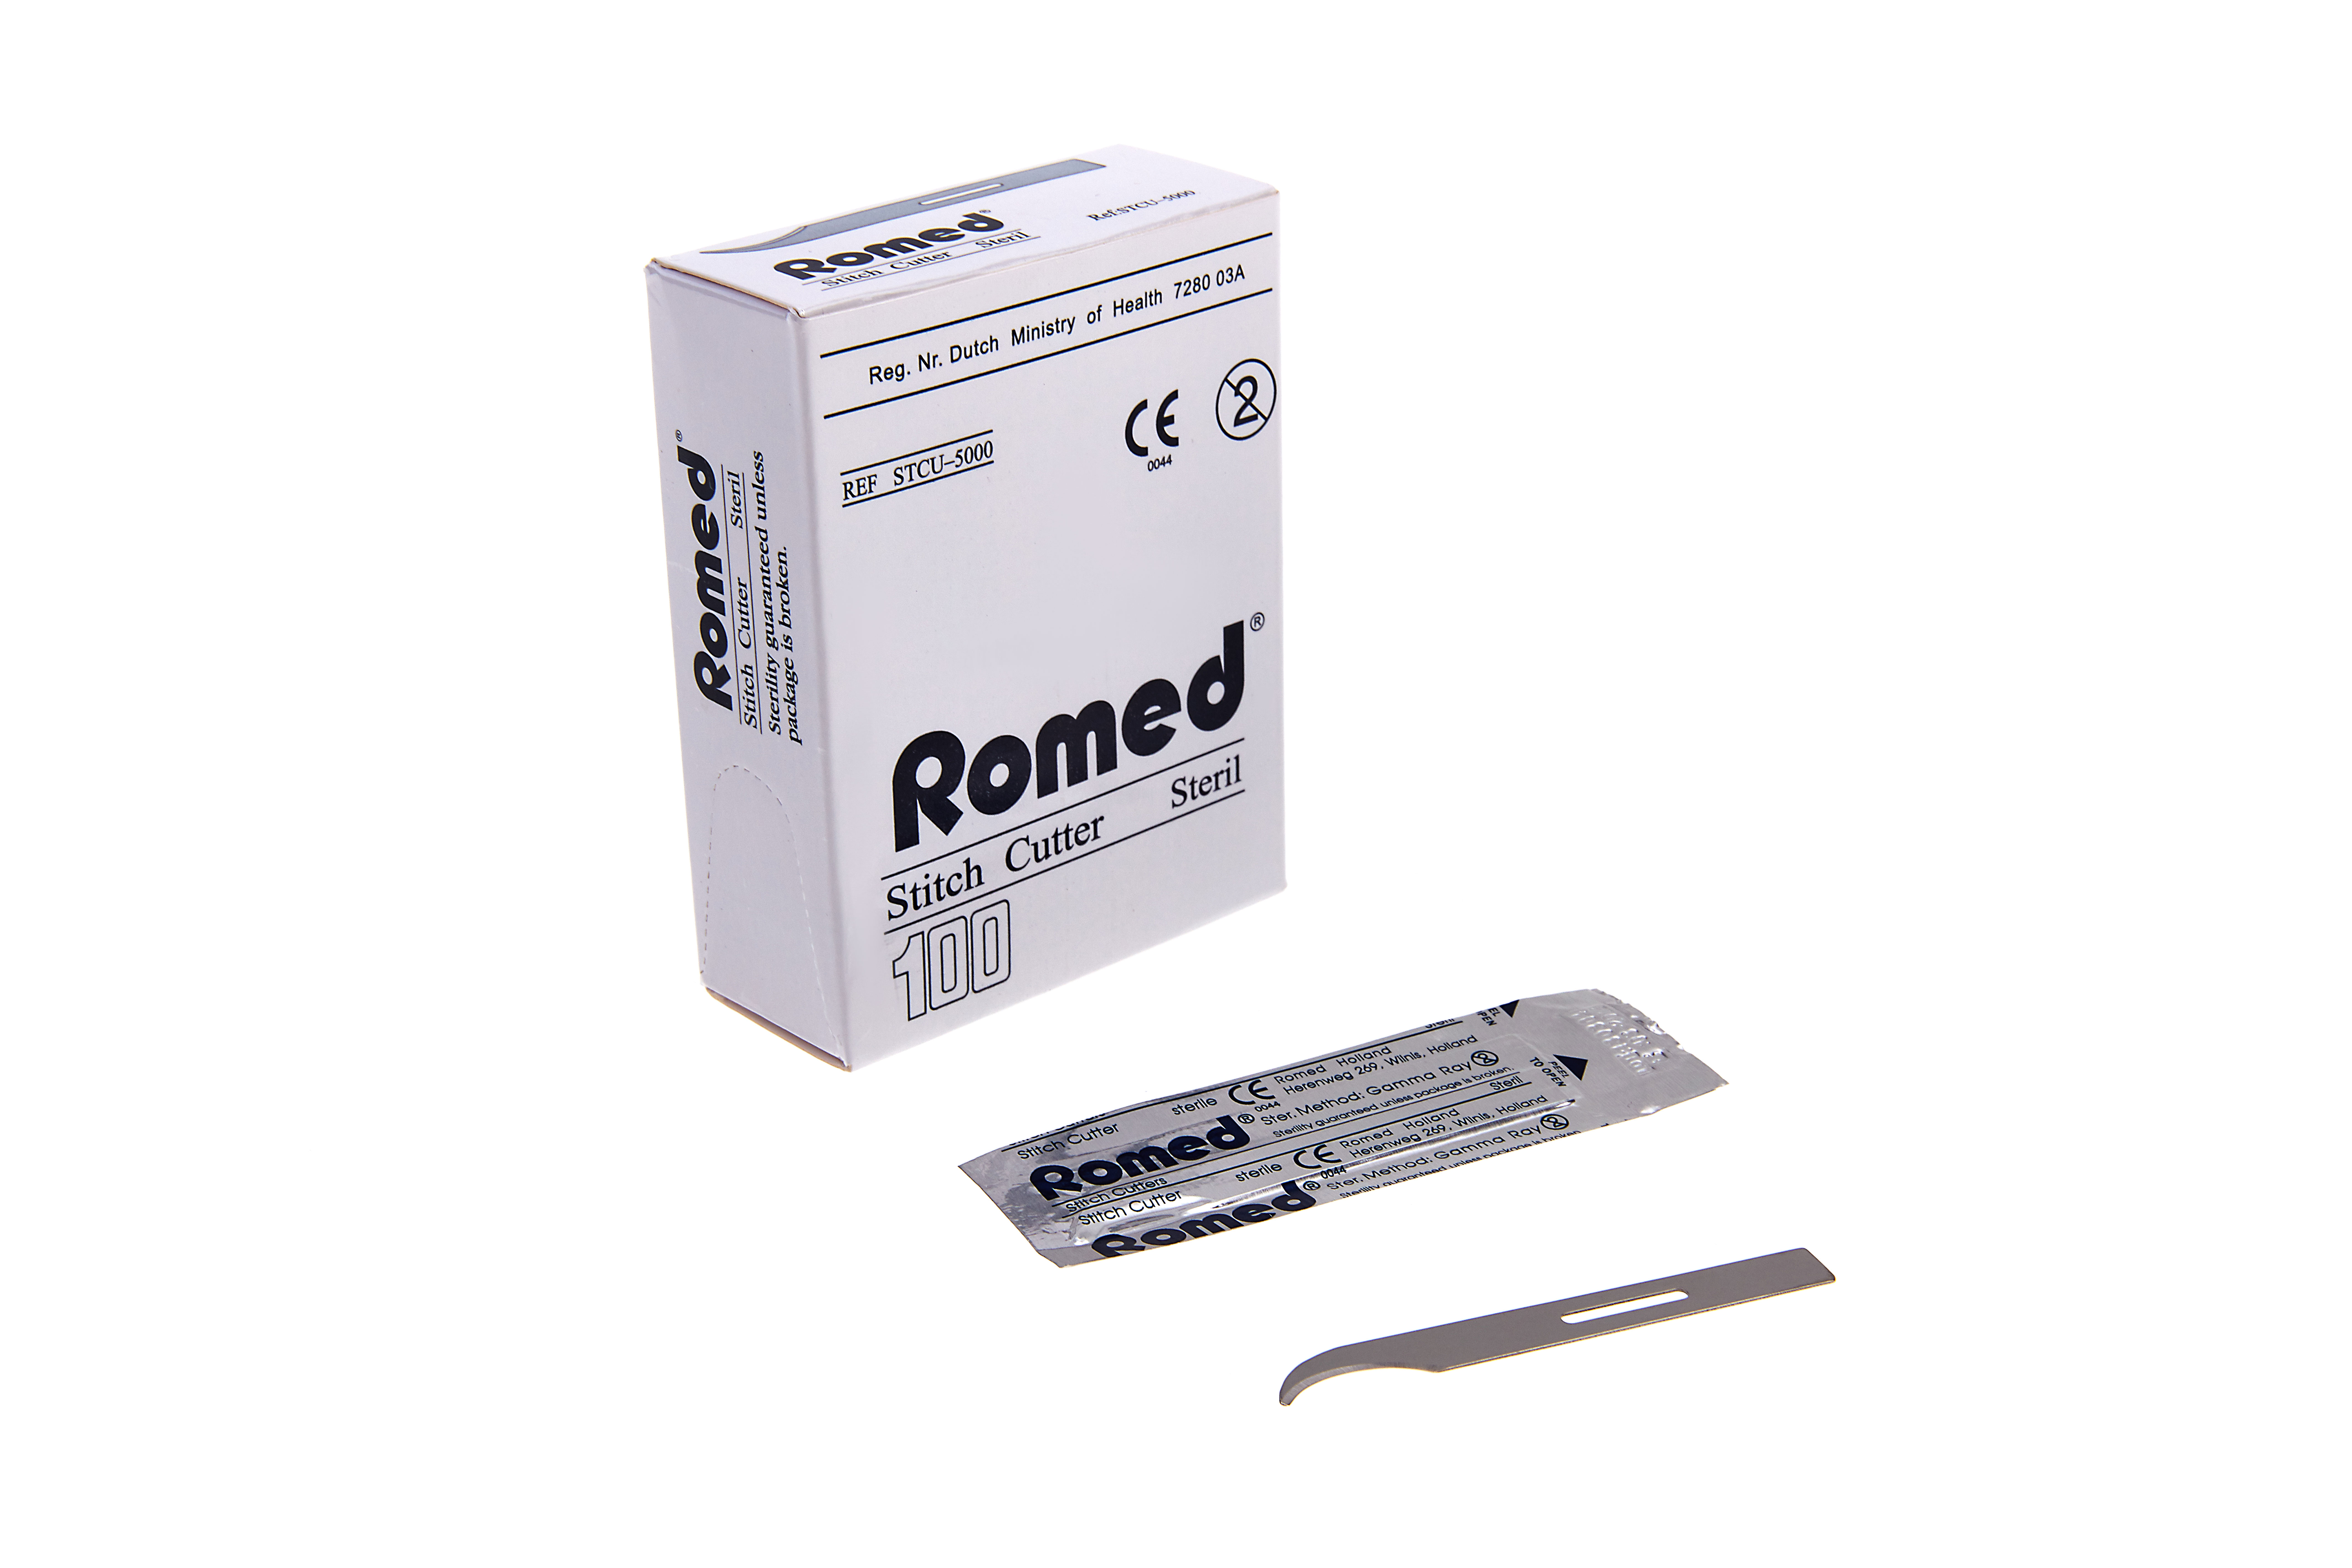 STCU5000 Romed stitch cutters, length 6.5cm, sterile per piece, 100 pcs in an inner box, 50 x 100 pcs = 5.000 pcs in a carton.